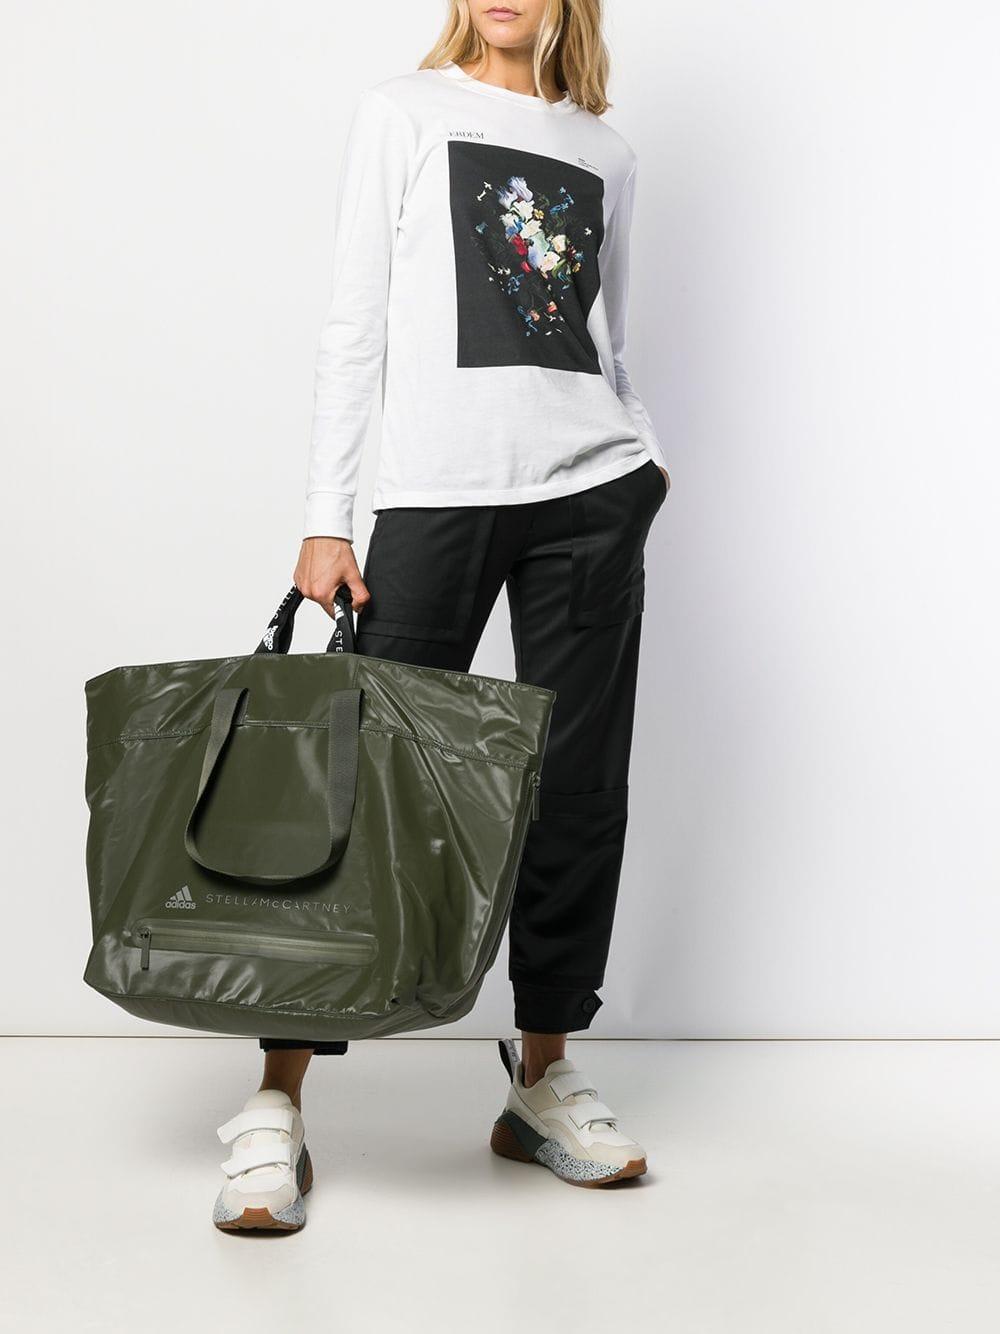 klei Nietje Aantrekkingskracht adidas By Stella McCartney Oversized Bag in Green | Lyst